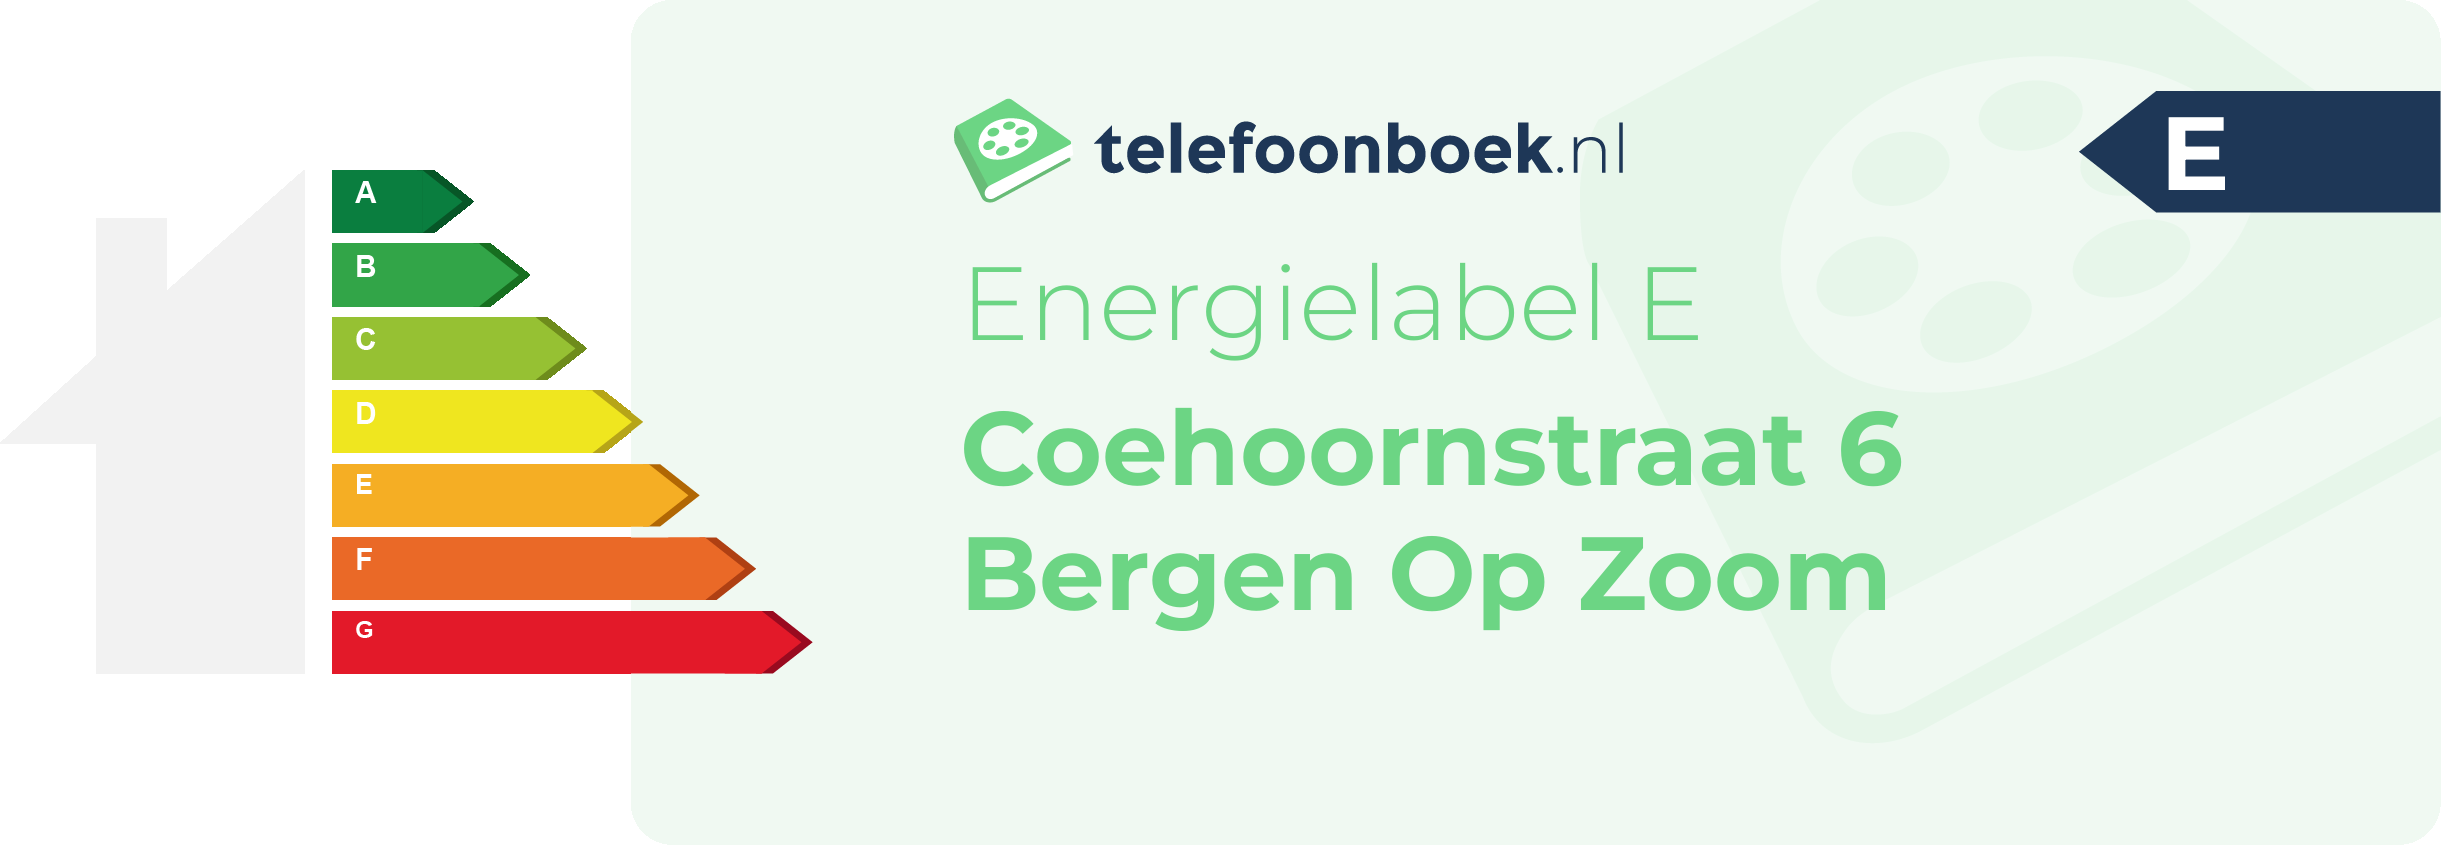 Energielabel Coehoornstraat 6 Bergen Op Zoom